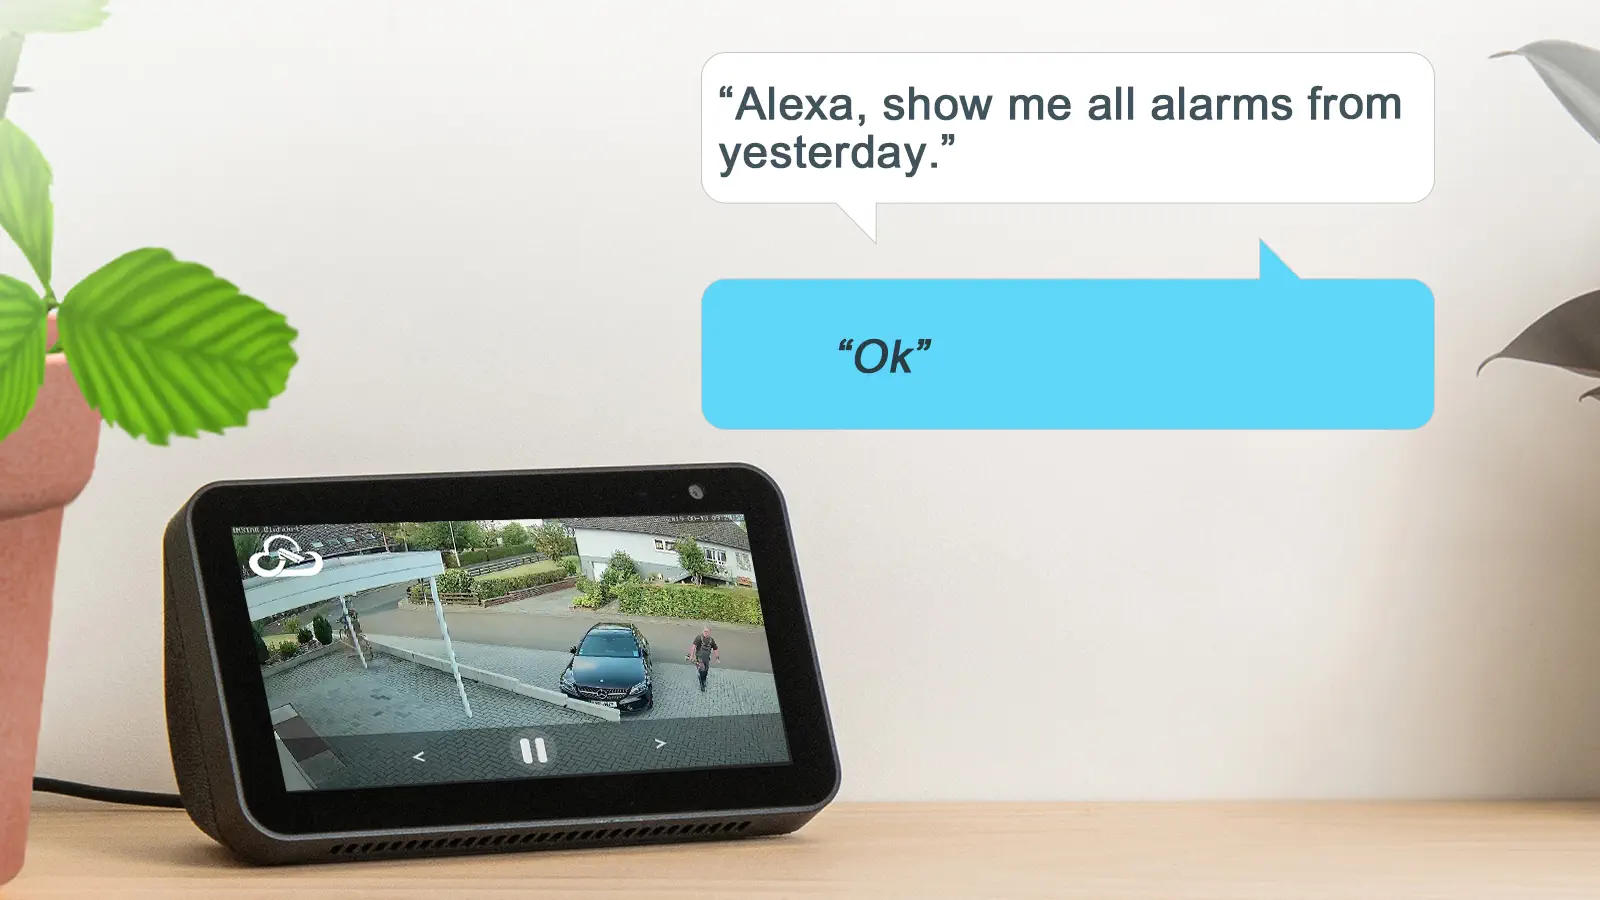 Alexa Play alarm videos based on date